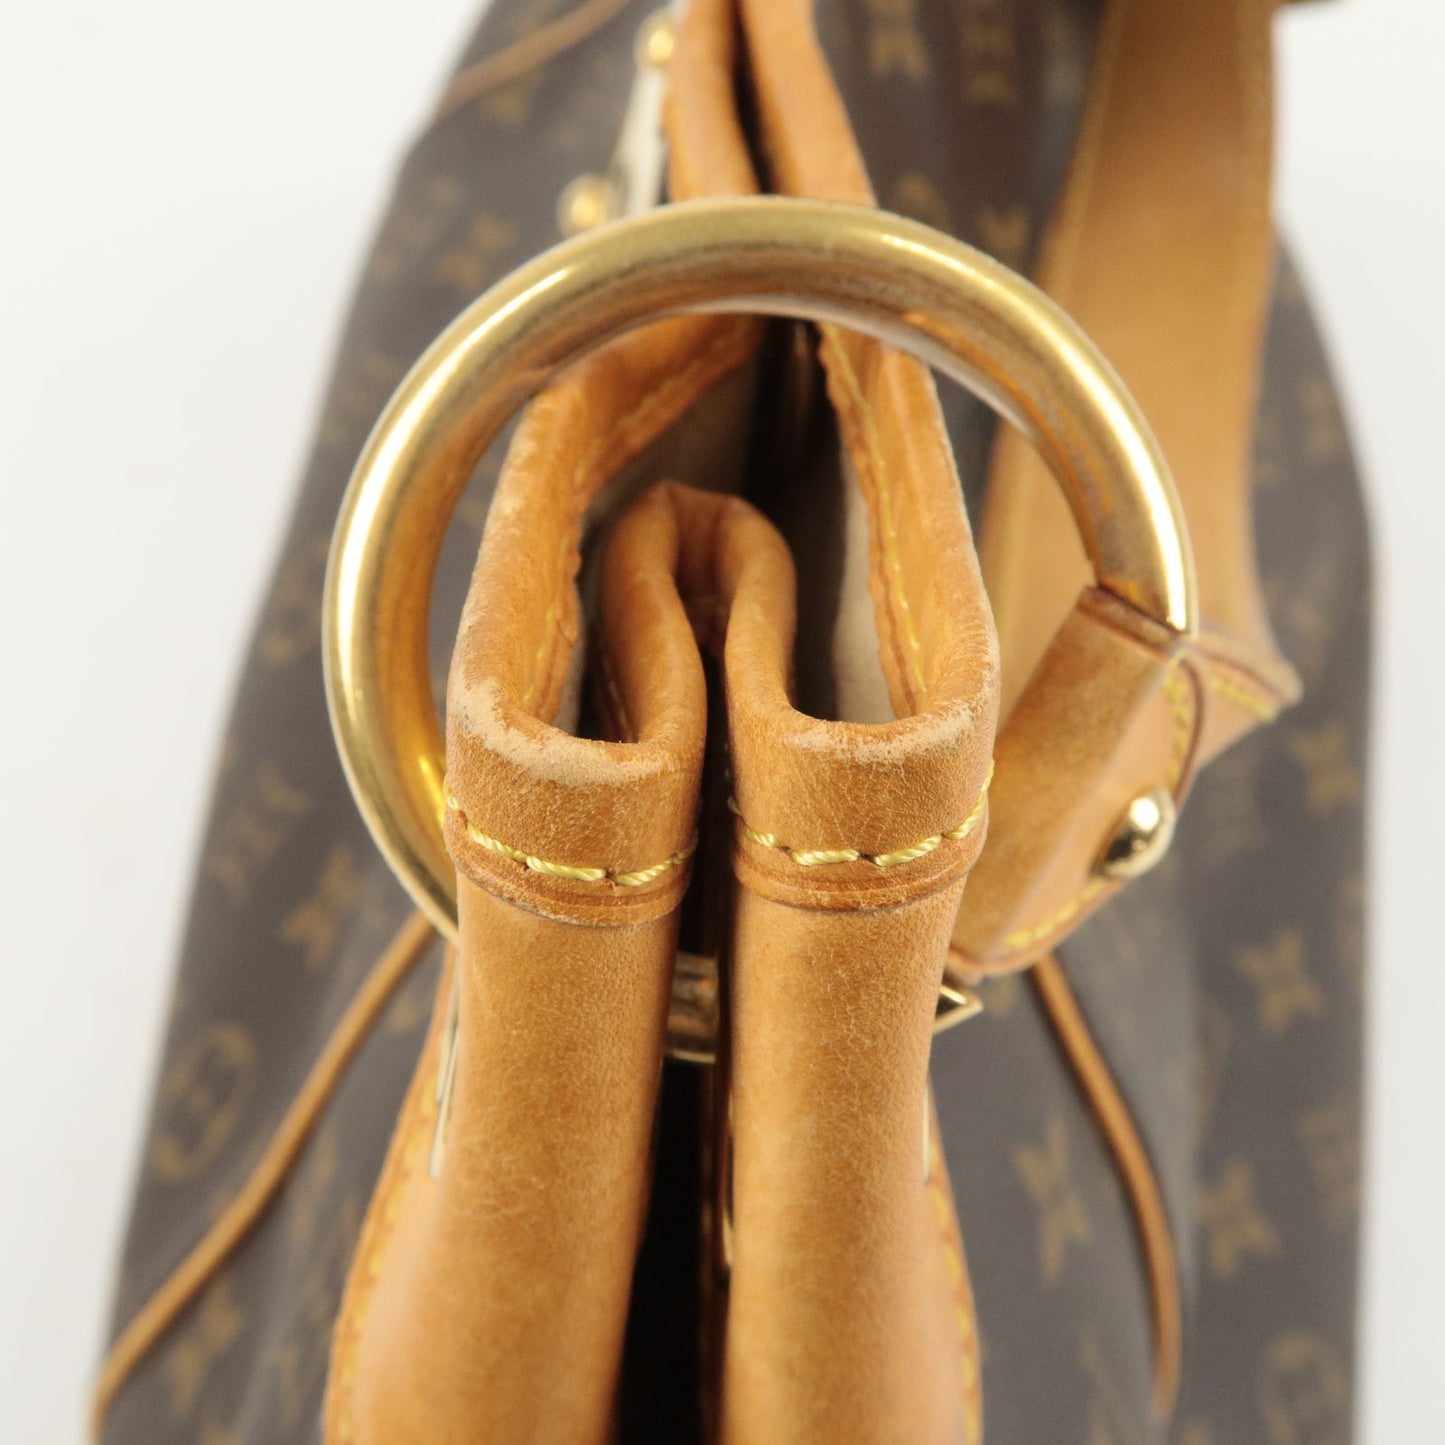 Galliera - Vuitton - Monogram - PM - M56382 – dct - Bag - Shoulder